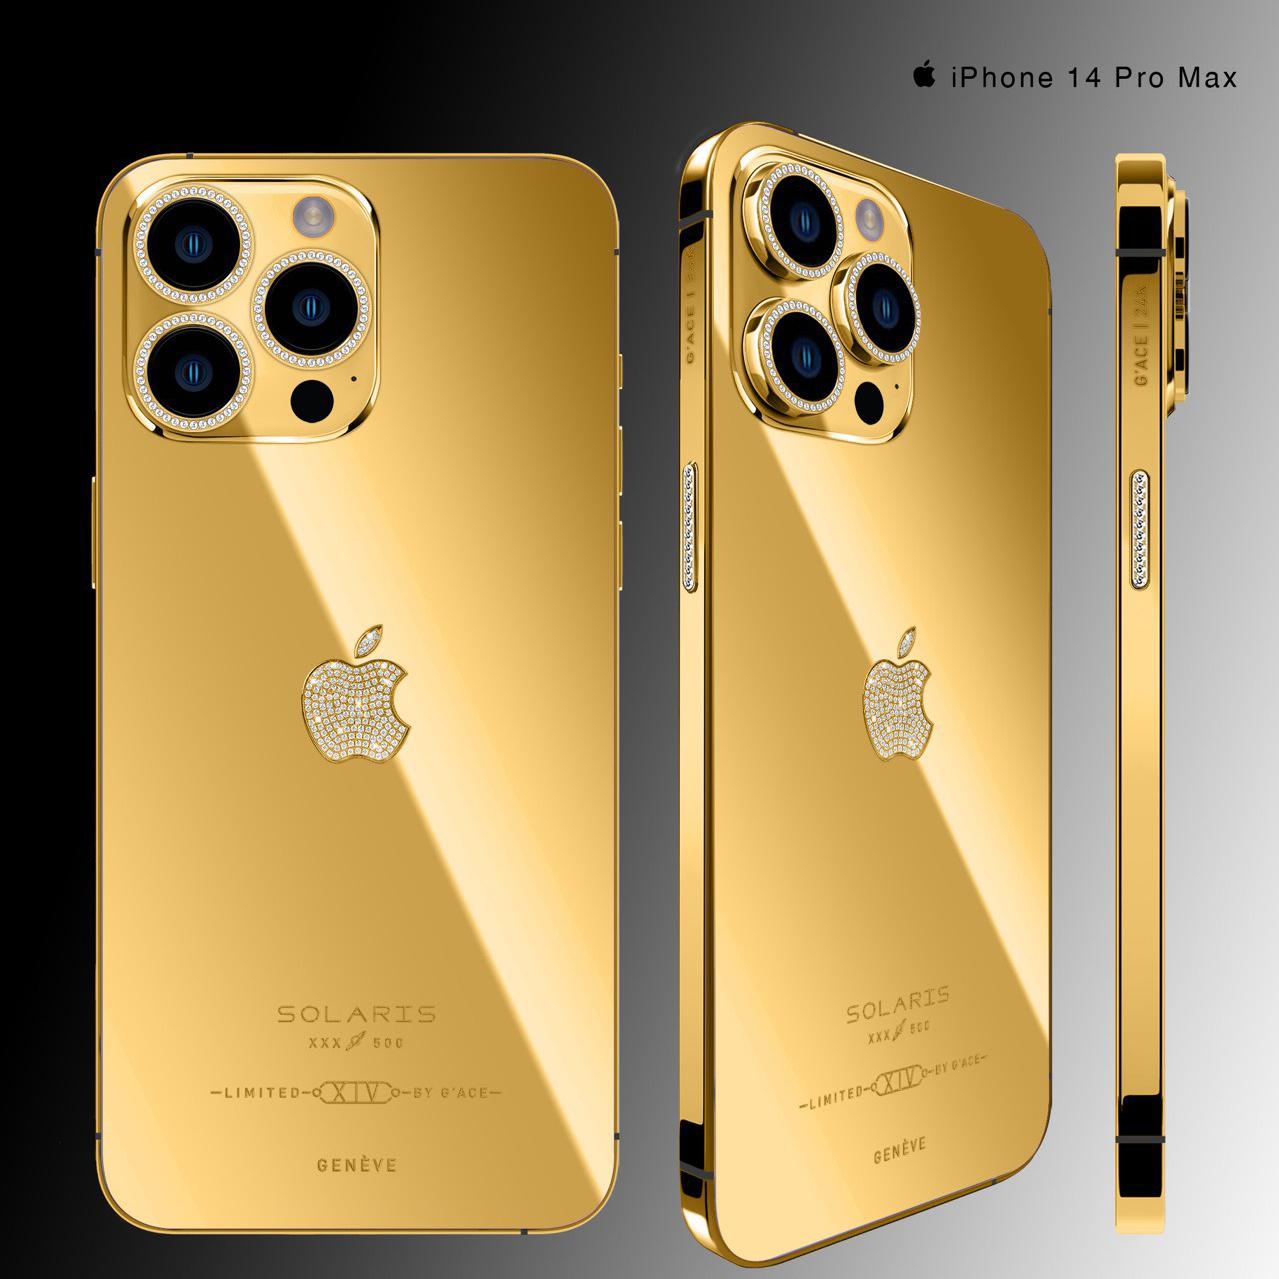 Ngắm nhìn iPhone 14 Mạ Vàng vô cùng đẹp mắt, với lớp phủ vàng rực rỡ làm nổi bật thiết kế của thiết bị. Hãy xem qua hình ảnh này để cảm nhận được độ sang trọng của sản phẩm.